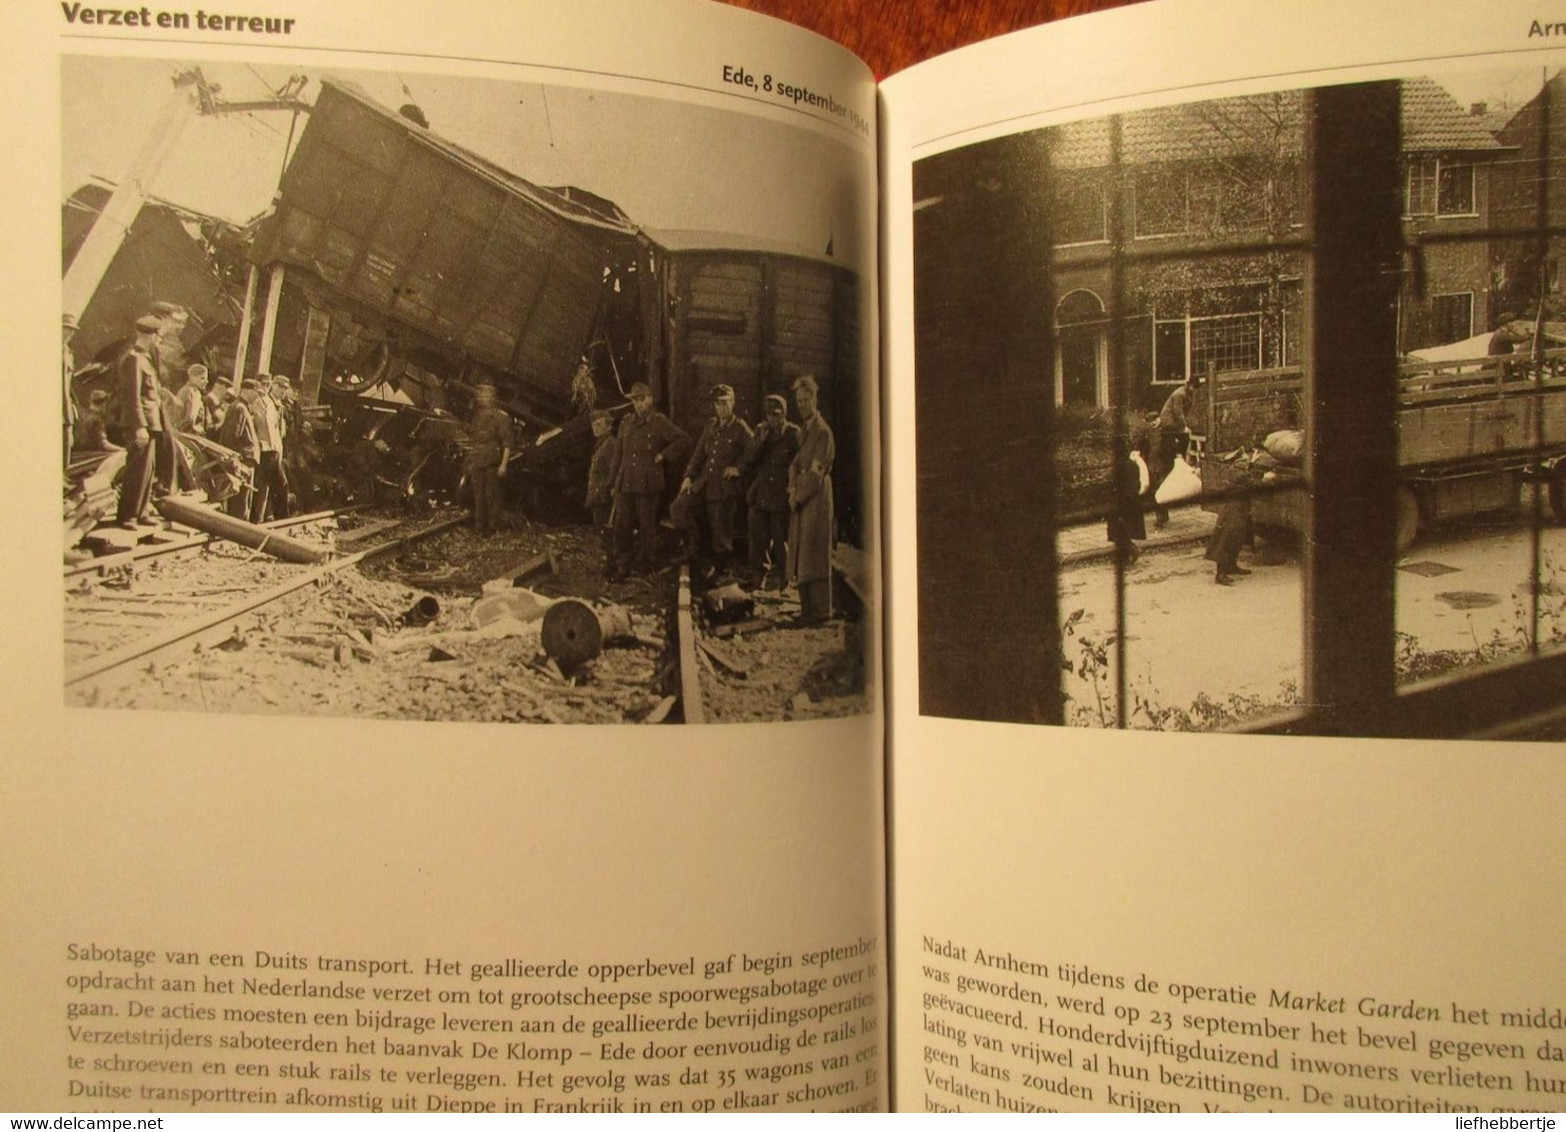 Het 40-45 boek - fotocollectie Ned. instituut voor oorlogsdocumentatie - door E. Somers en R. Kok - 2002